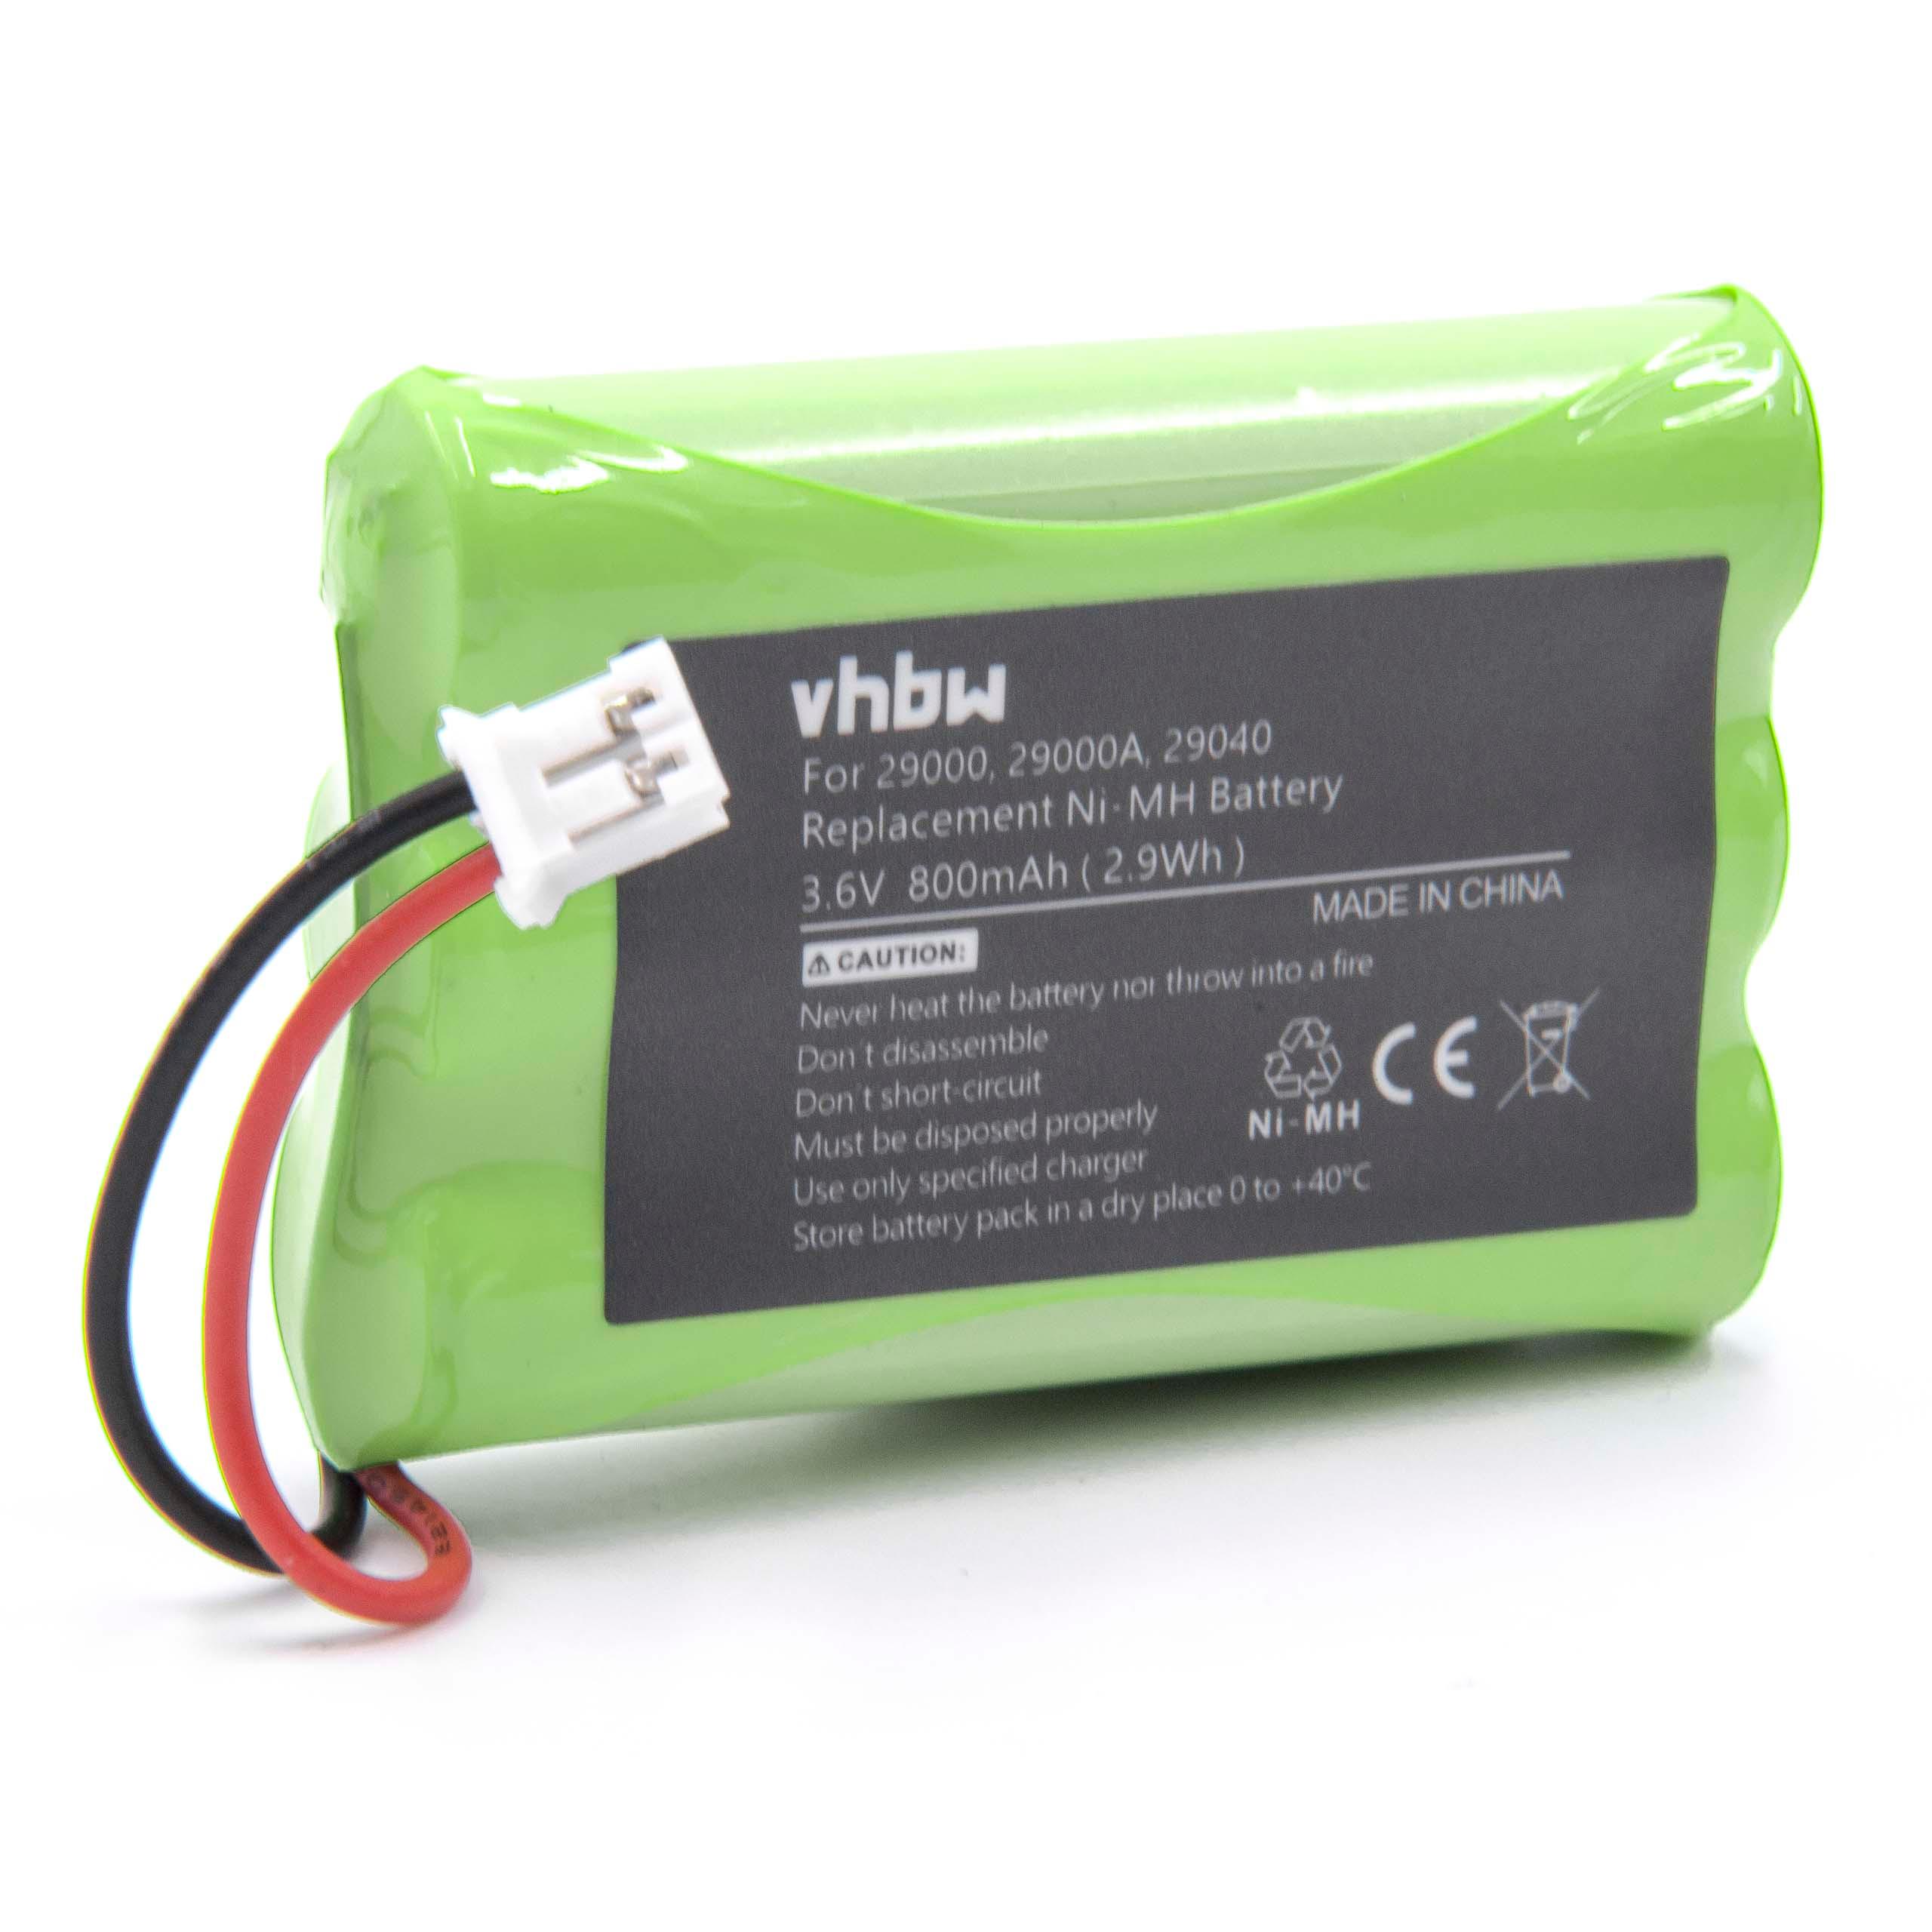 Batterie remplace Motorola CB94-01A, TFL3X44AAA900 pour moniteur bébé - 800mAh 3,6V NiMH